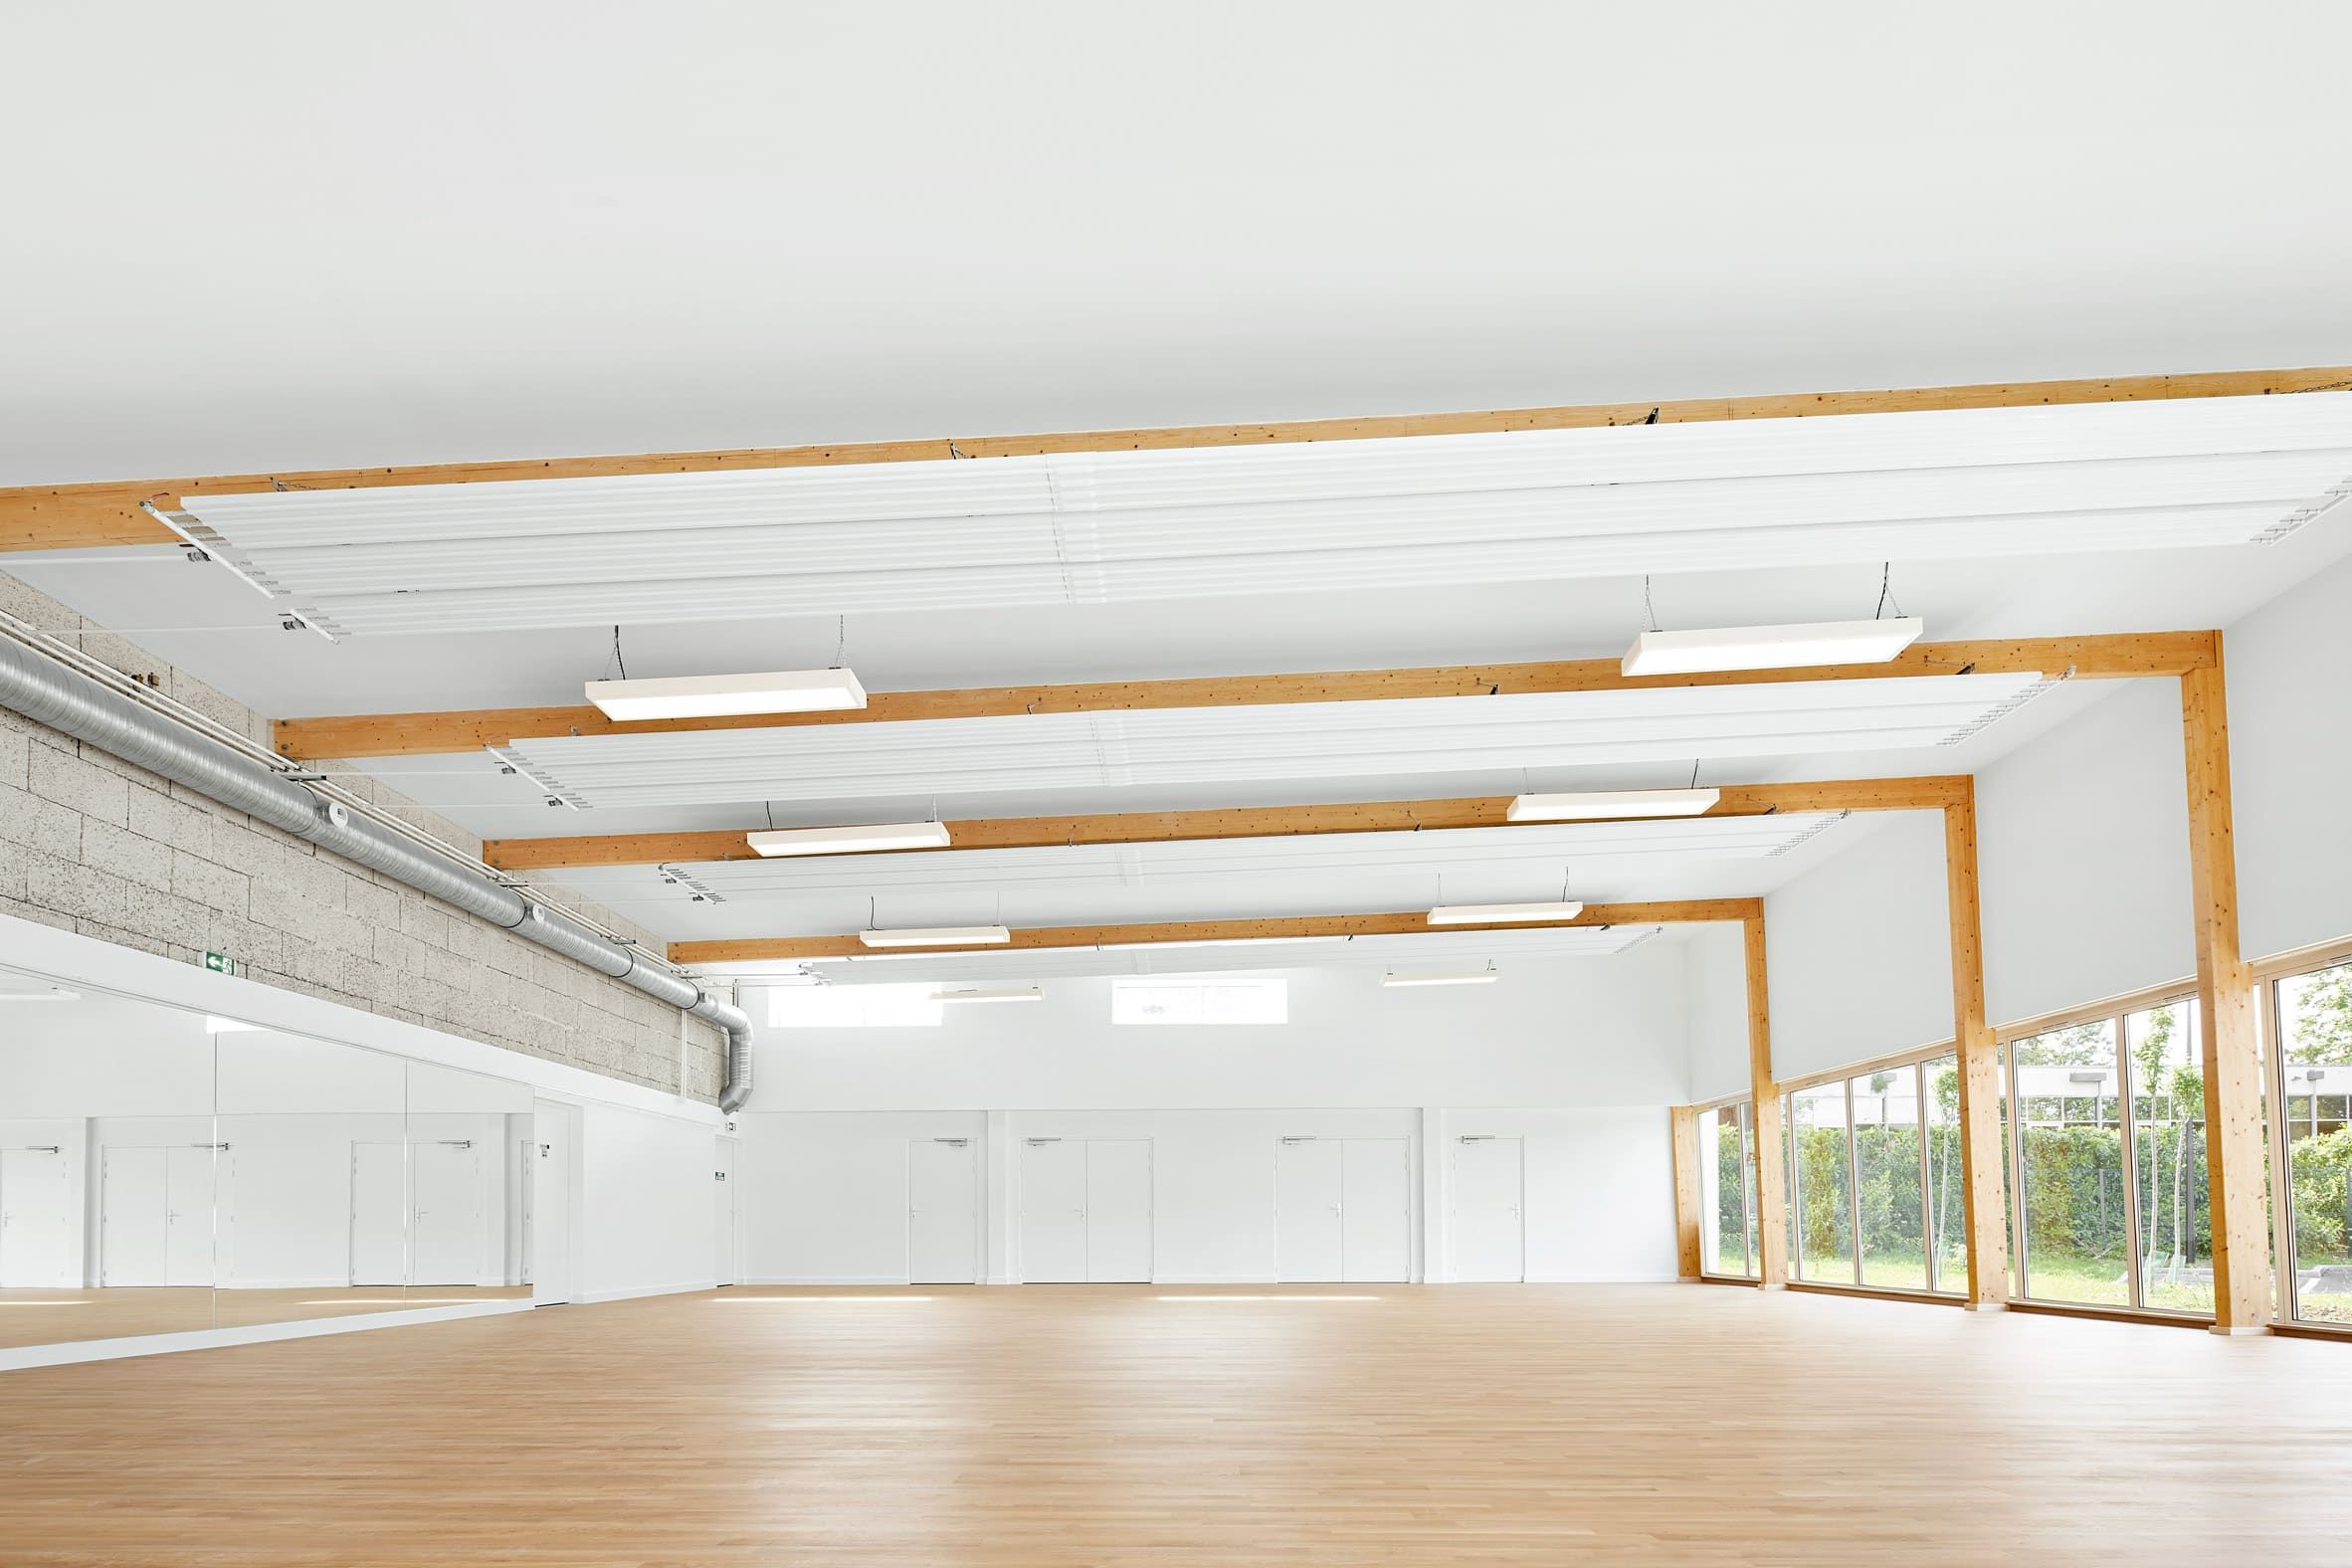 Pierre Chevet sports centre built using hempcrete for sustainable building